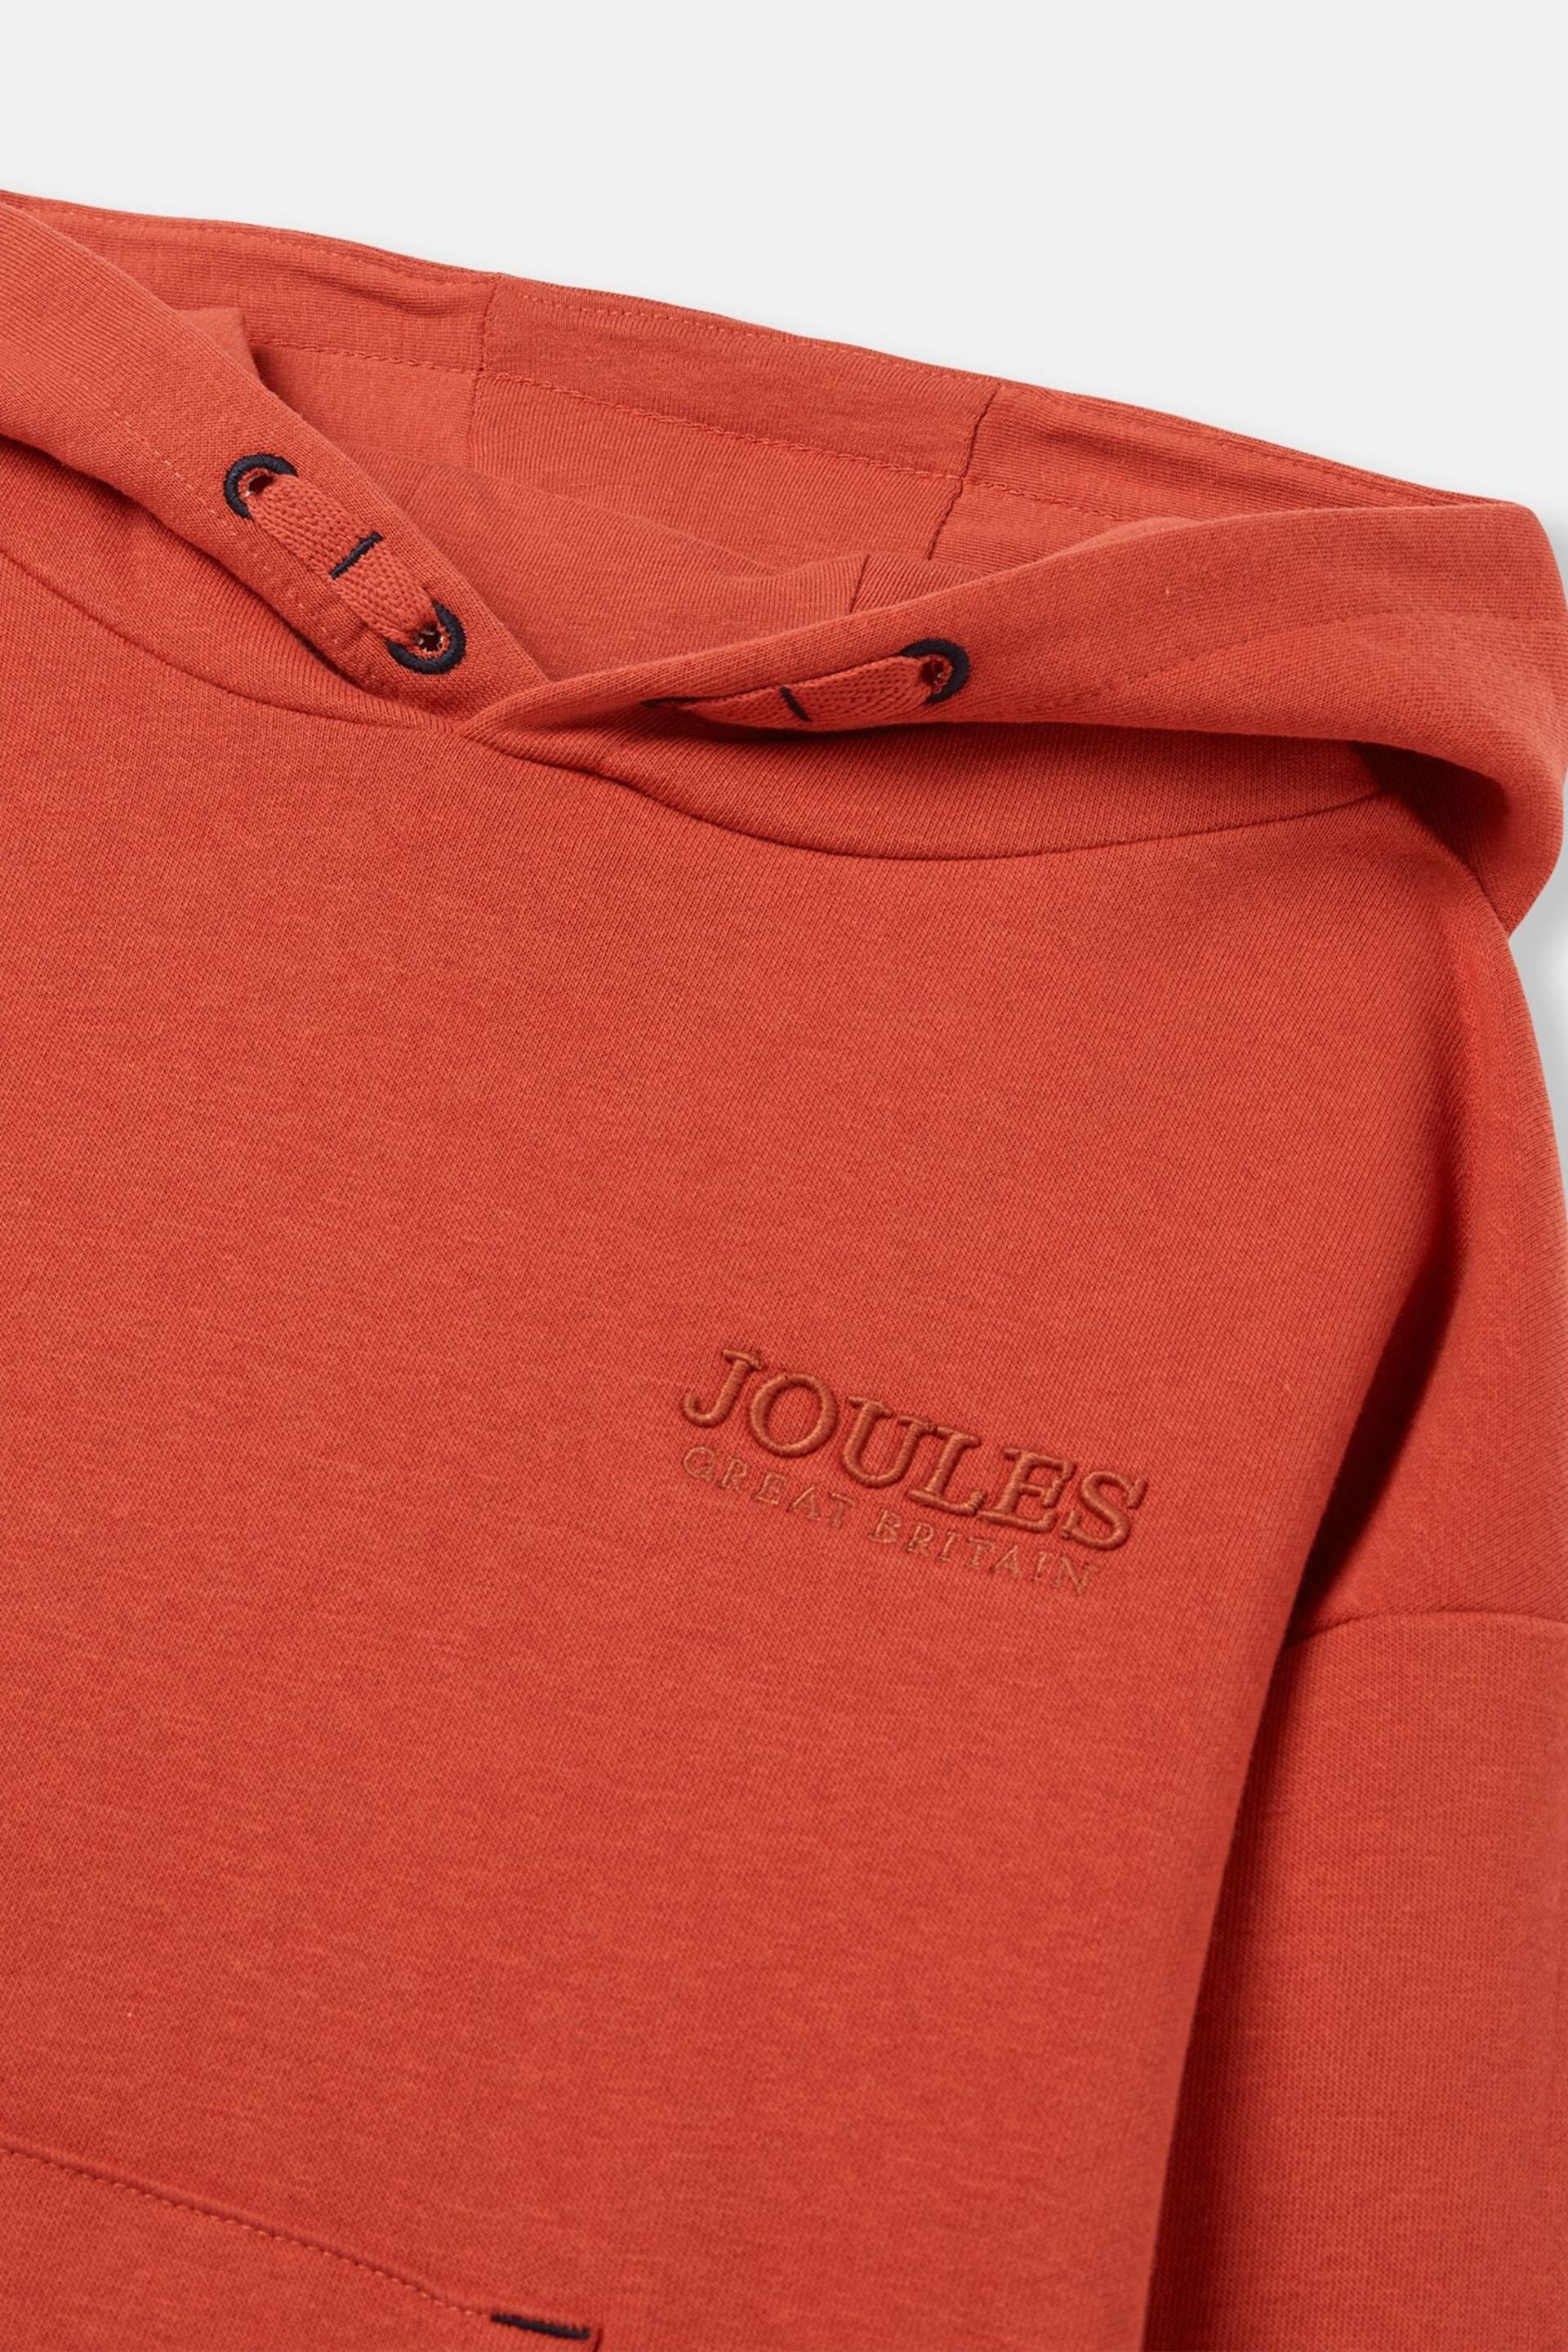 Joules Parkside Orange Hooded Sweatshirt - Image 3 of 6